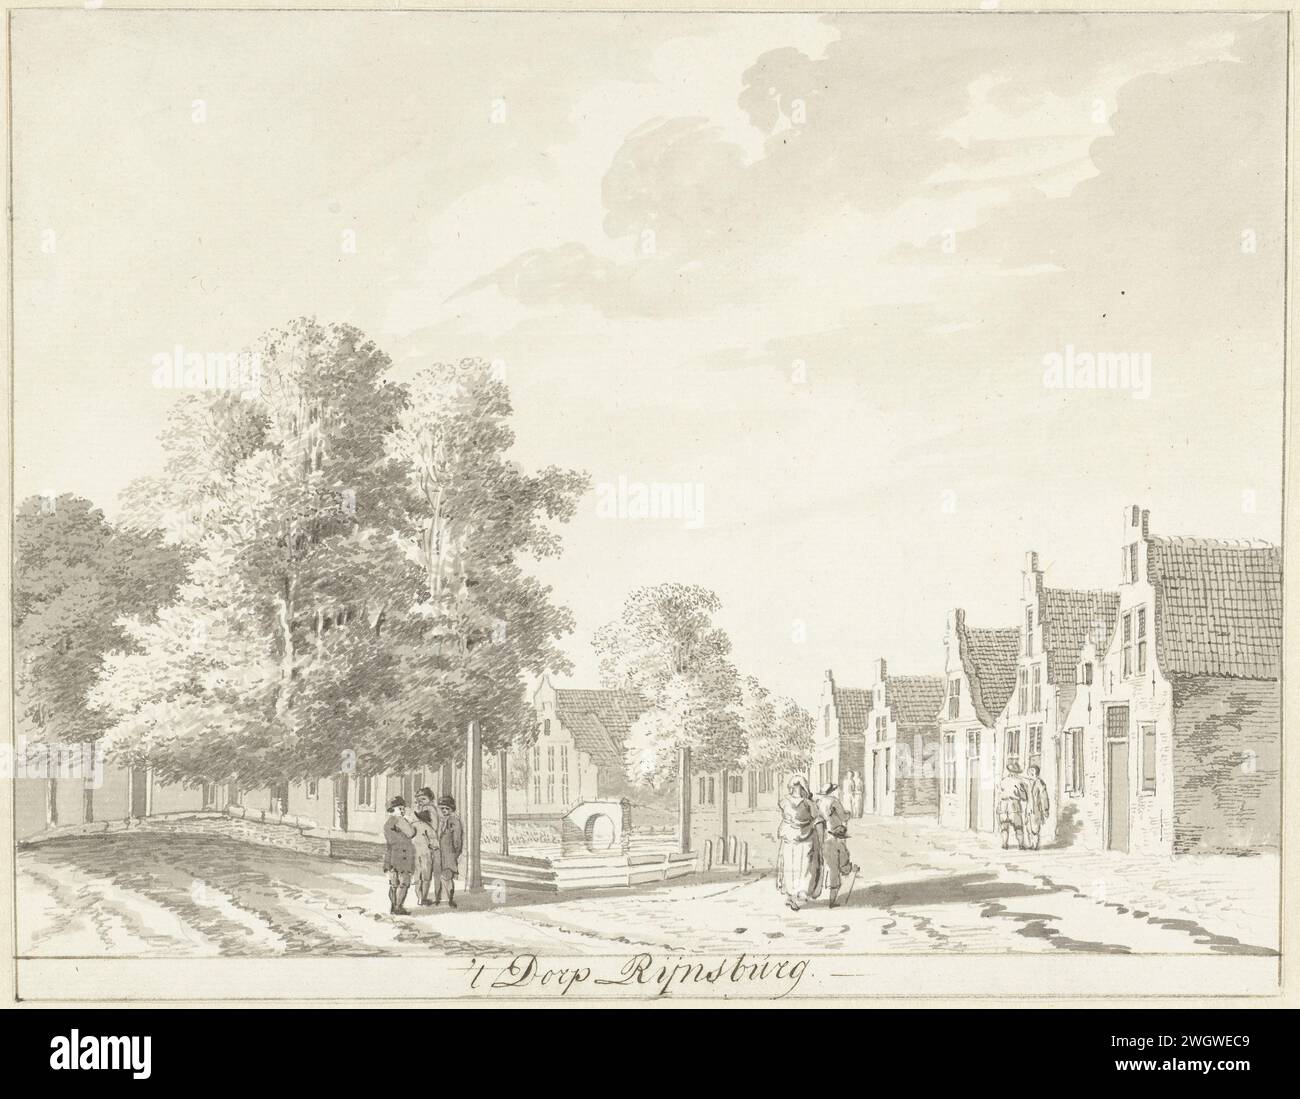 Le village de Rijnsburg, Hendrik Tavenier, 1775 papier à dessin. Encre stylo / brosse village rue Rijnsburg Banque D'Images